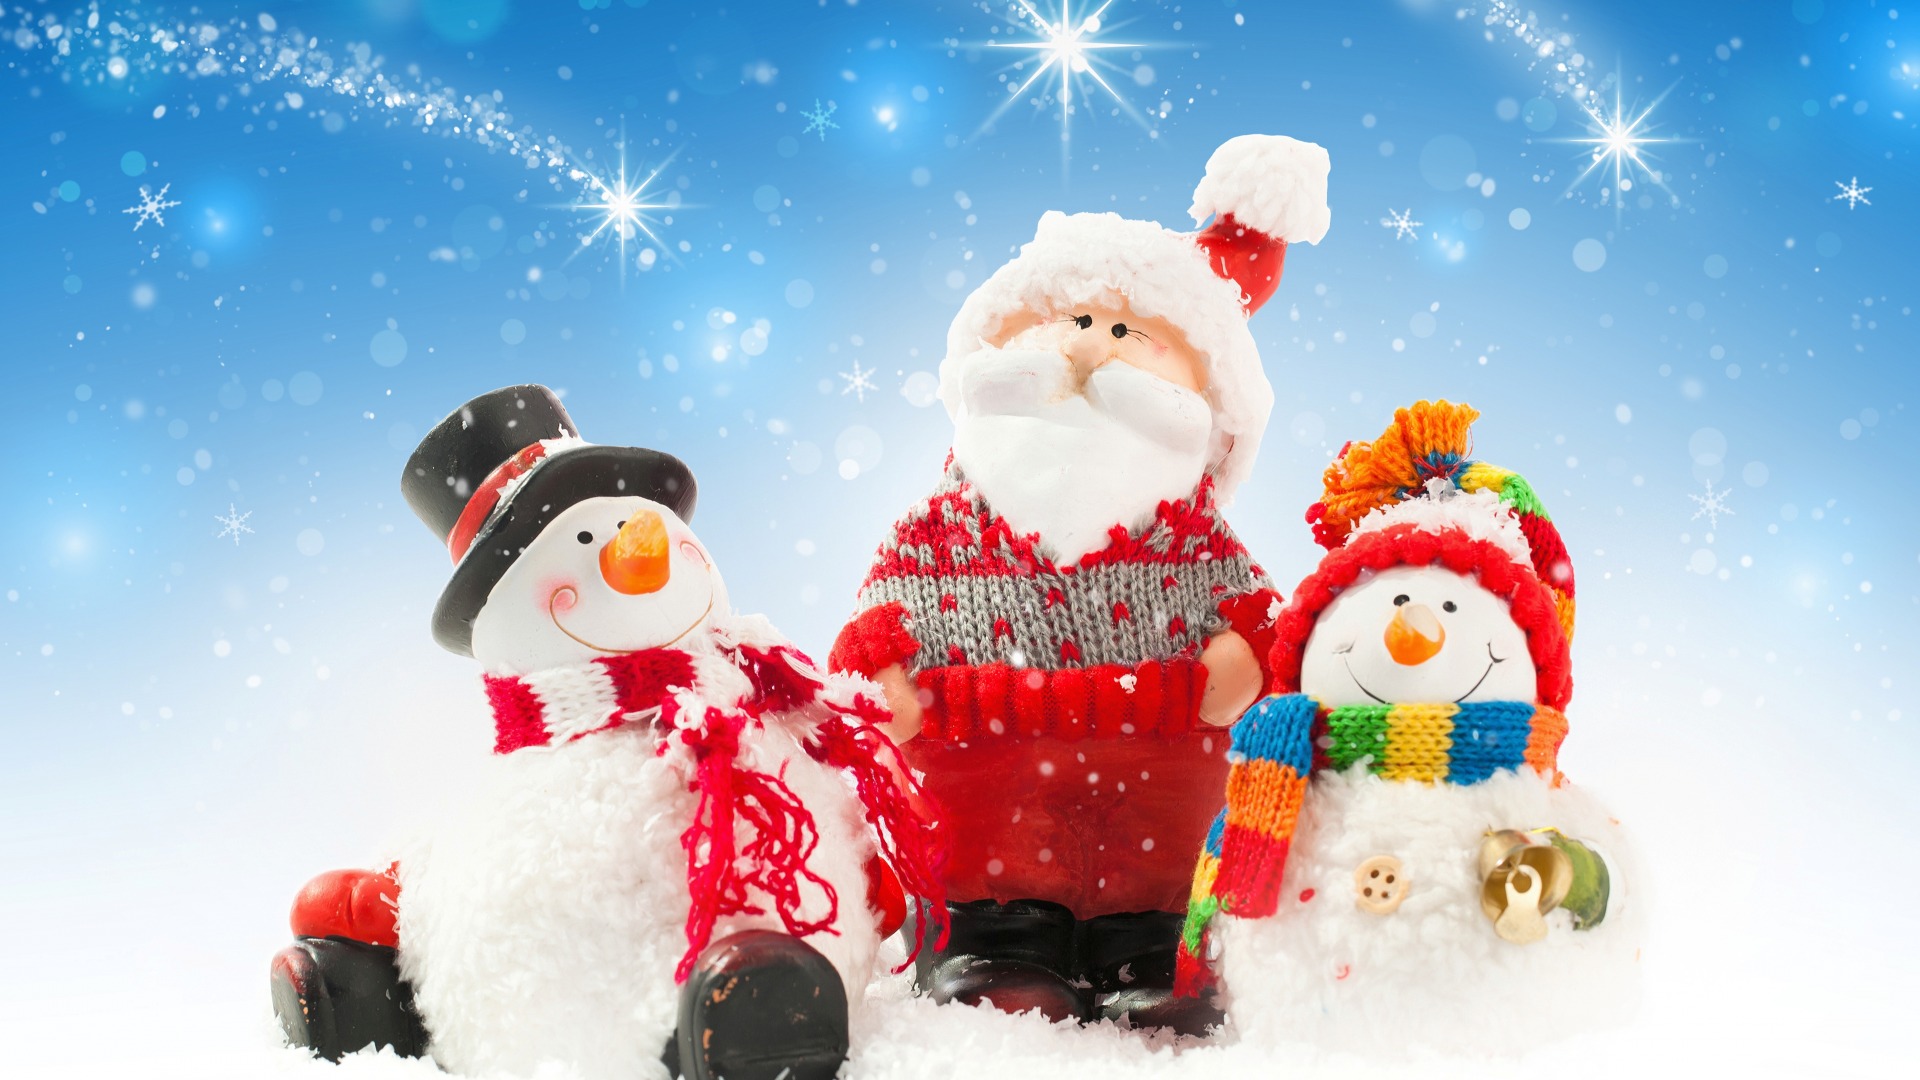 雪人,圣诞老人,新年,圣诞节,冬天,雪,桌面壁纸